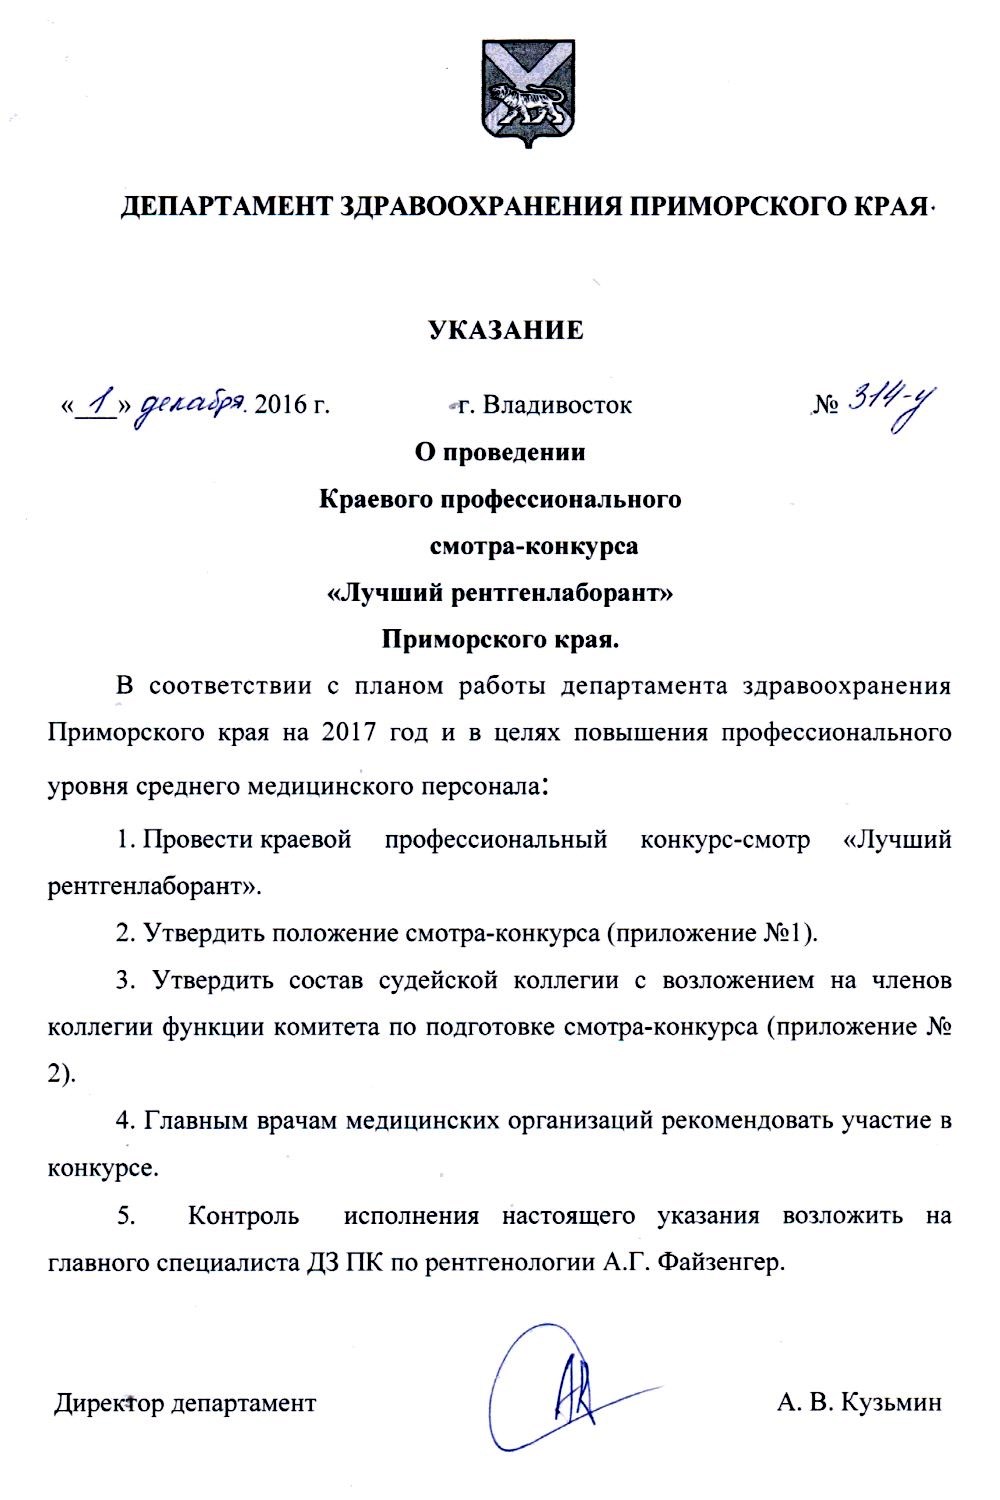 Департамент здравоохранения Приморского края. Указание от 1 декабря 2016 г. г. Владивостока №314-У.